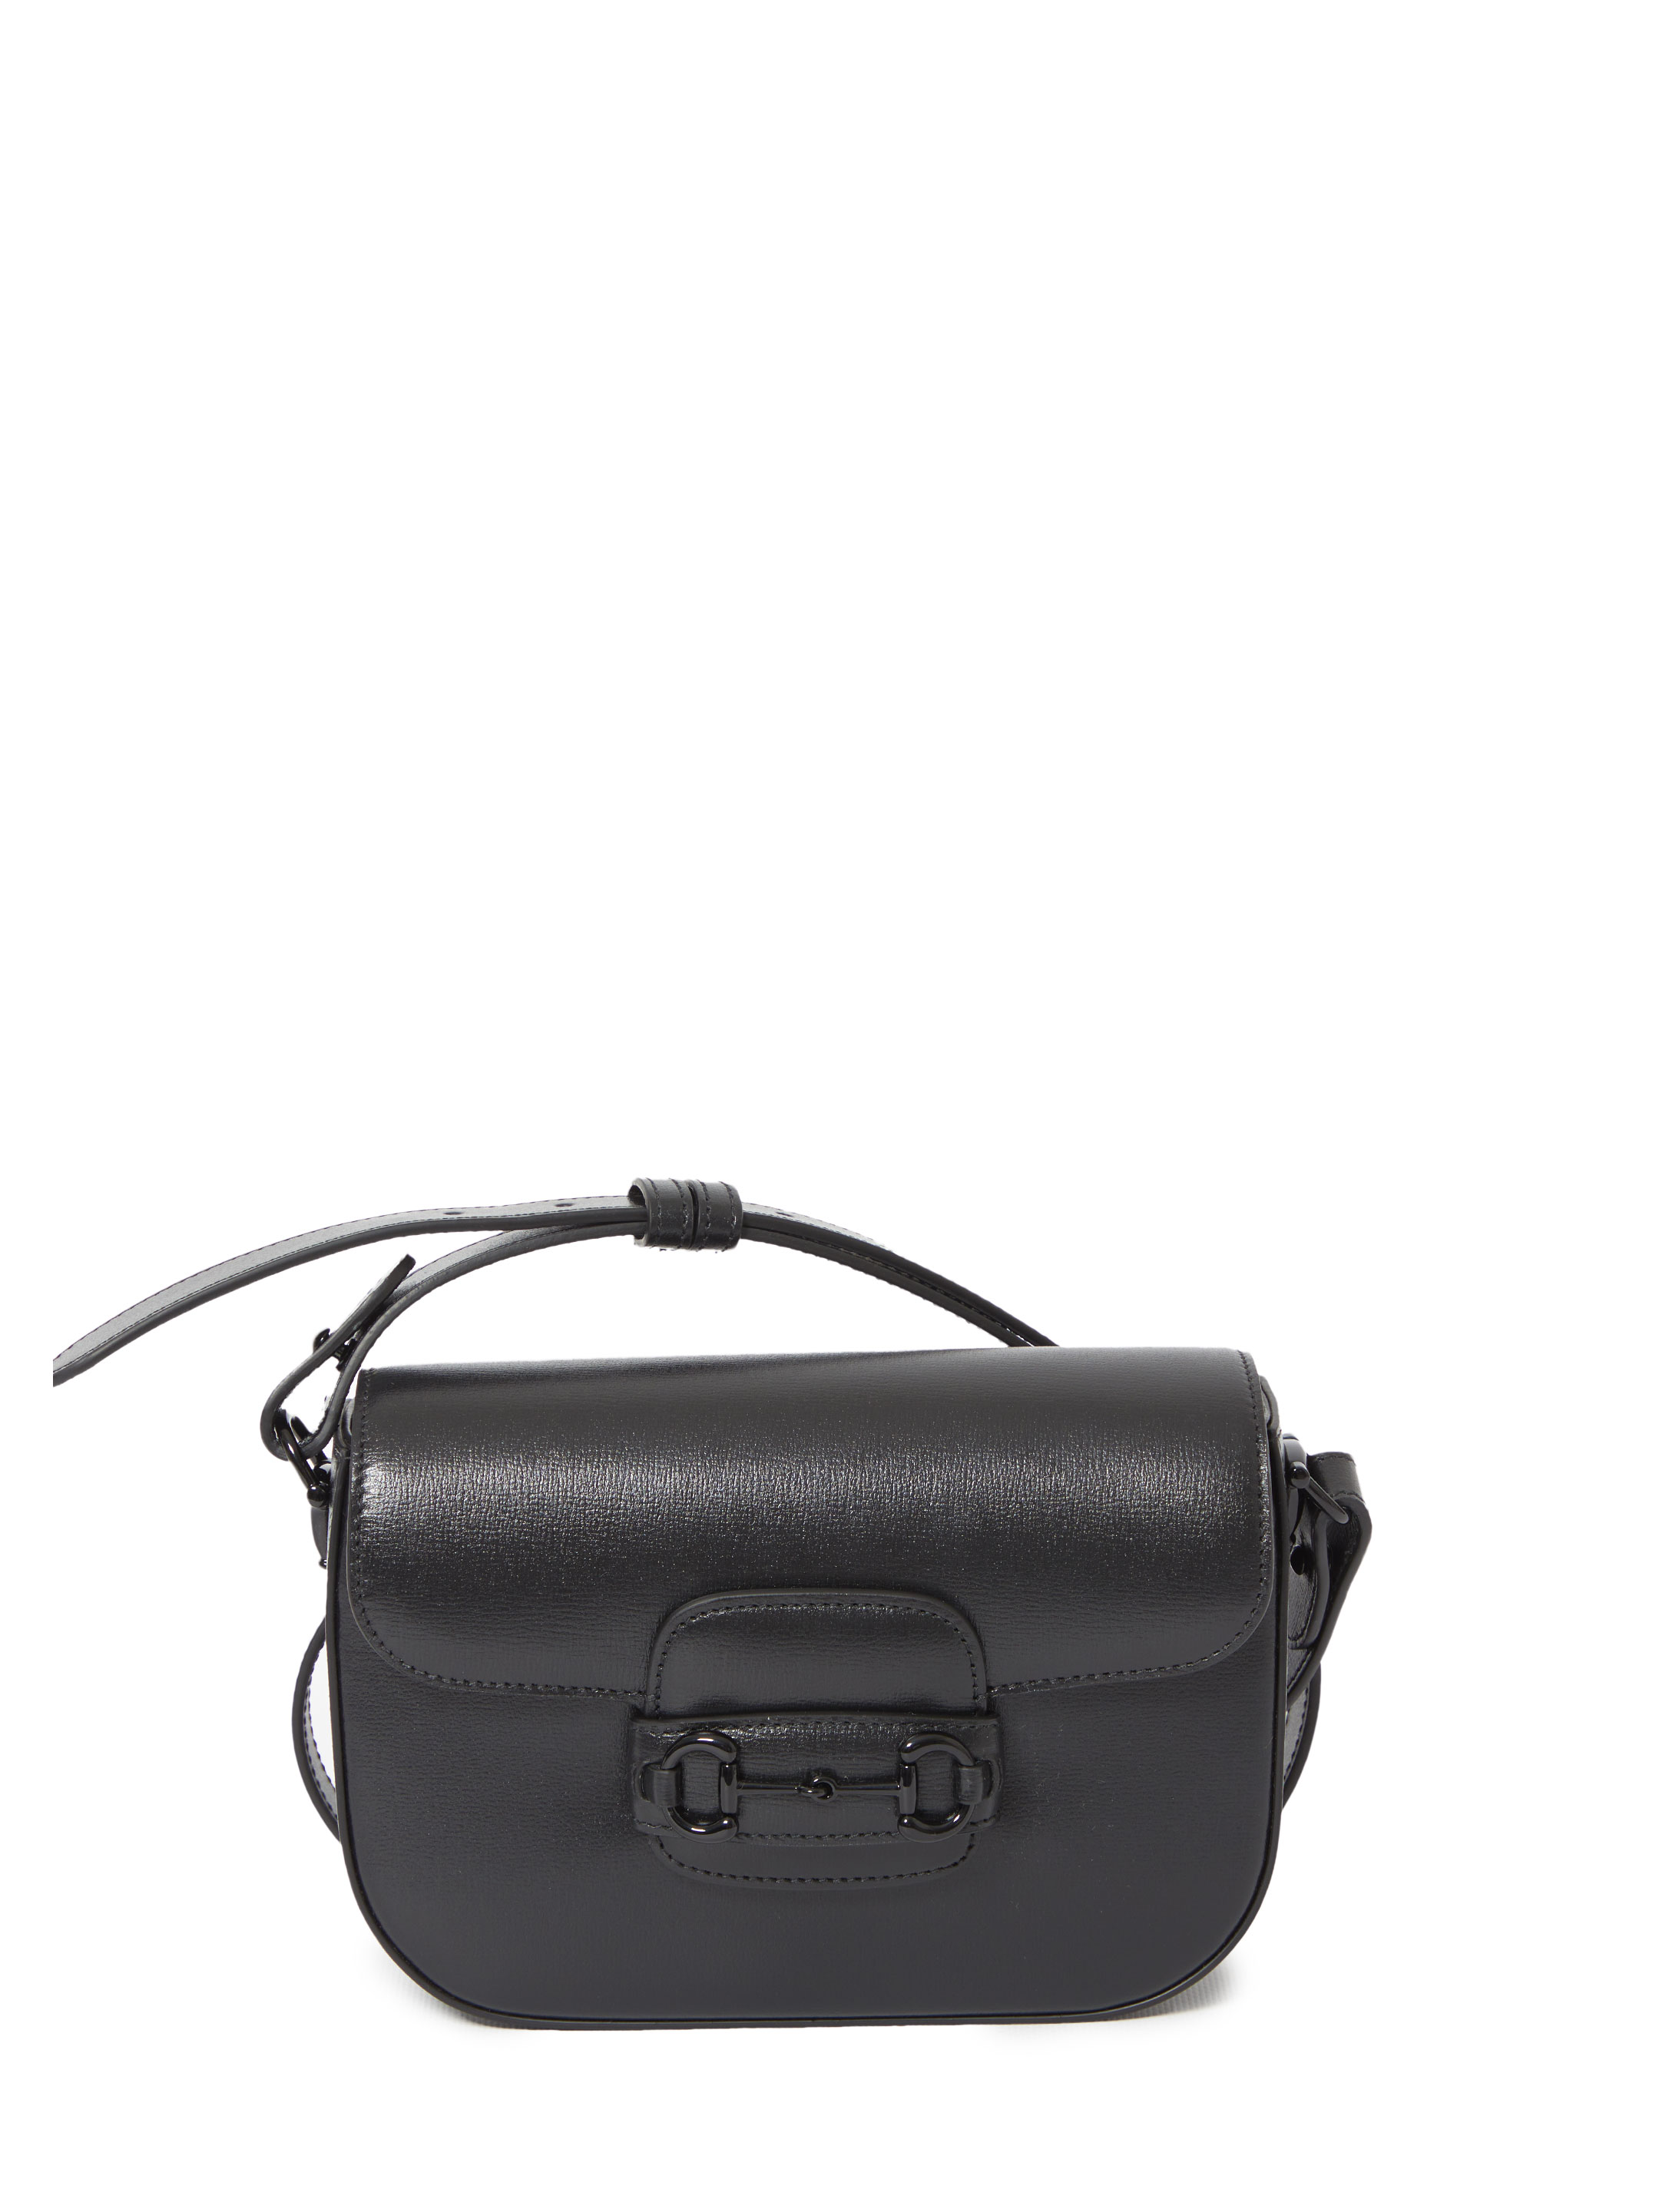 Сумка Gucci Small Gucci Horsebit 1955, черный сумка папка с плечевым ремнем